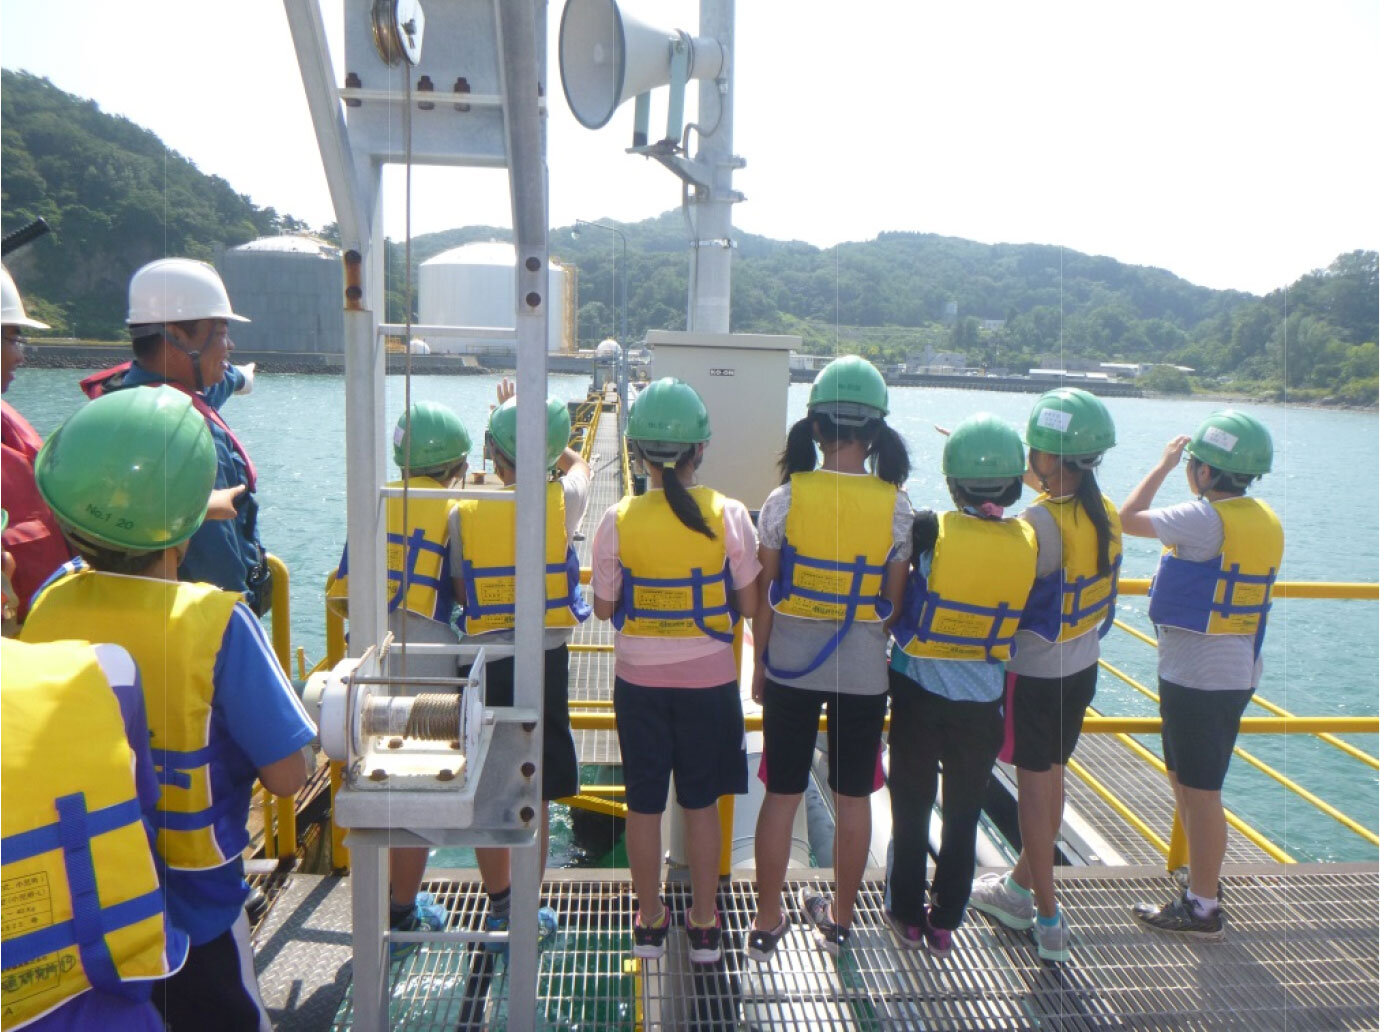 大型船桟橋から輸入タンクを見学しながら所員の説明を受ける生徒たち